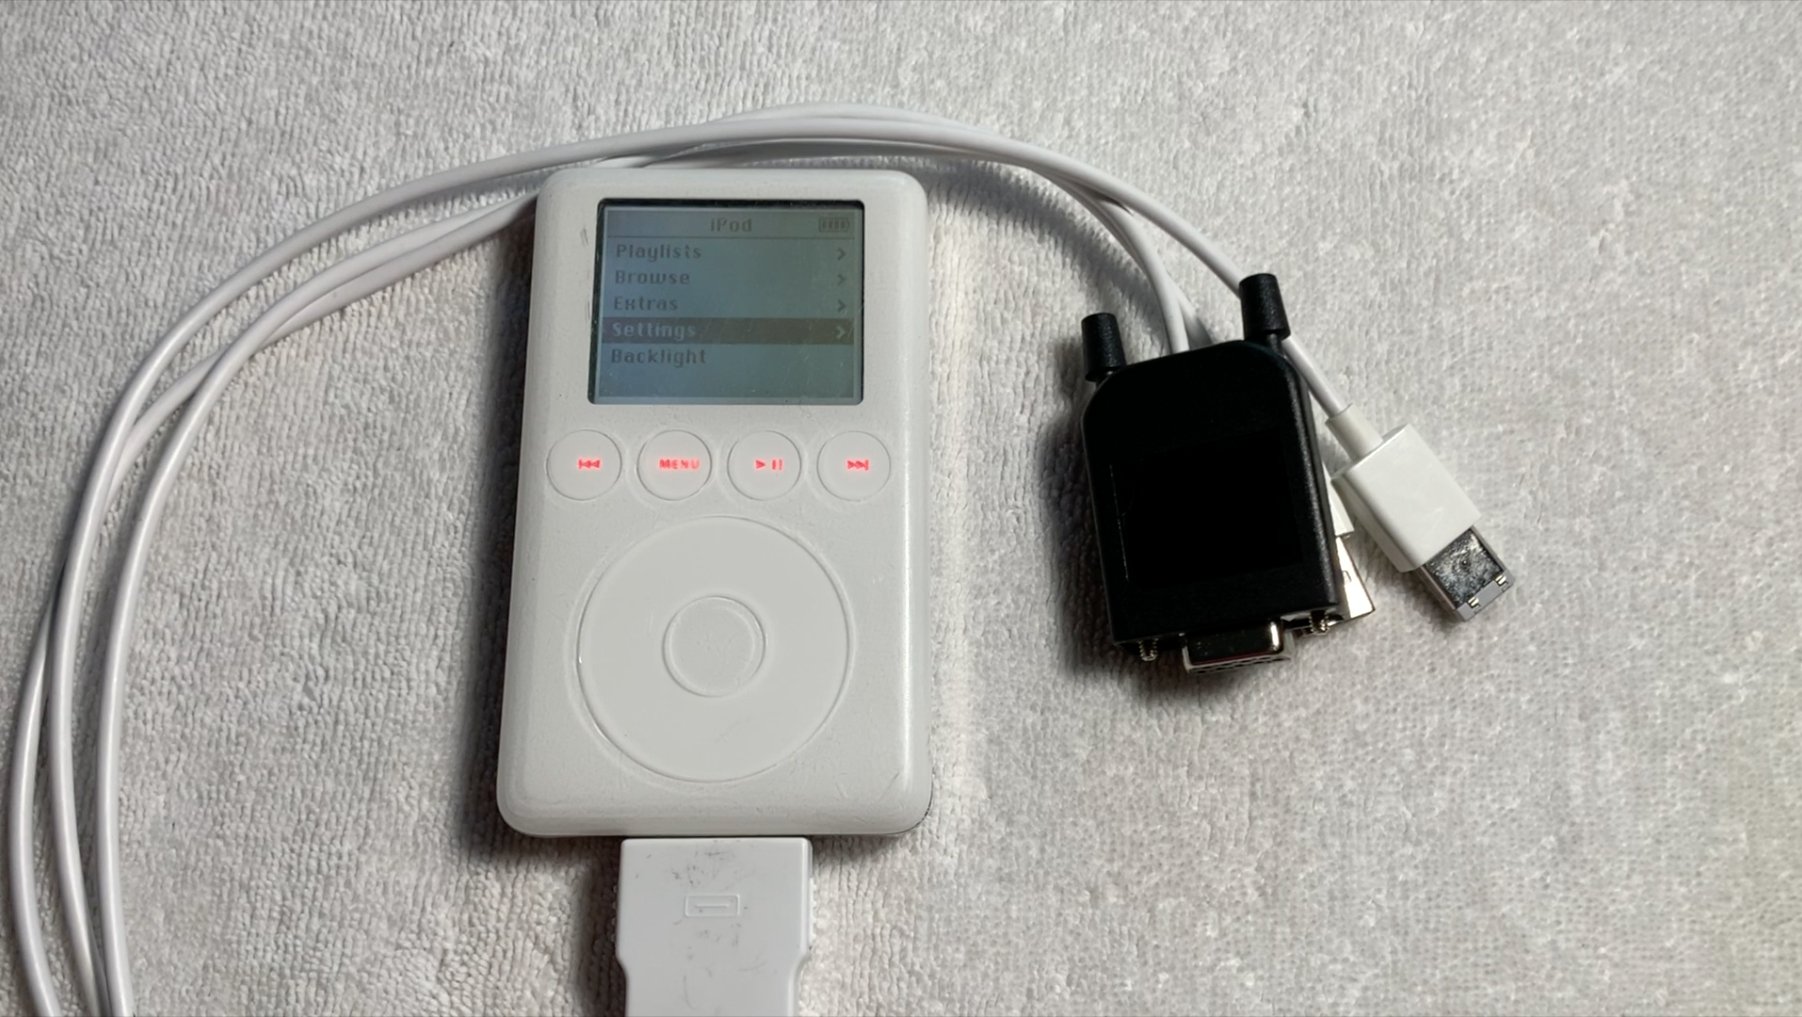 Er is een Apple iPod prototype met een Tetris kloon gevonden. Het is nooit uitgebracht